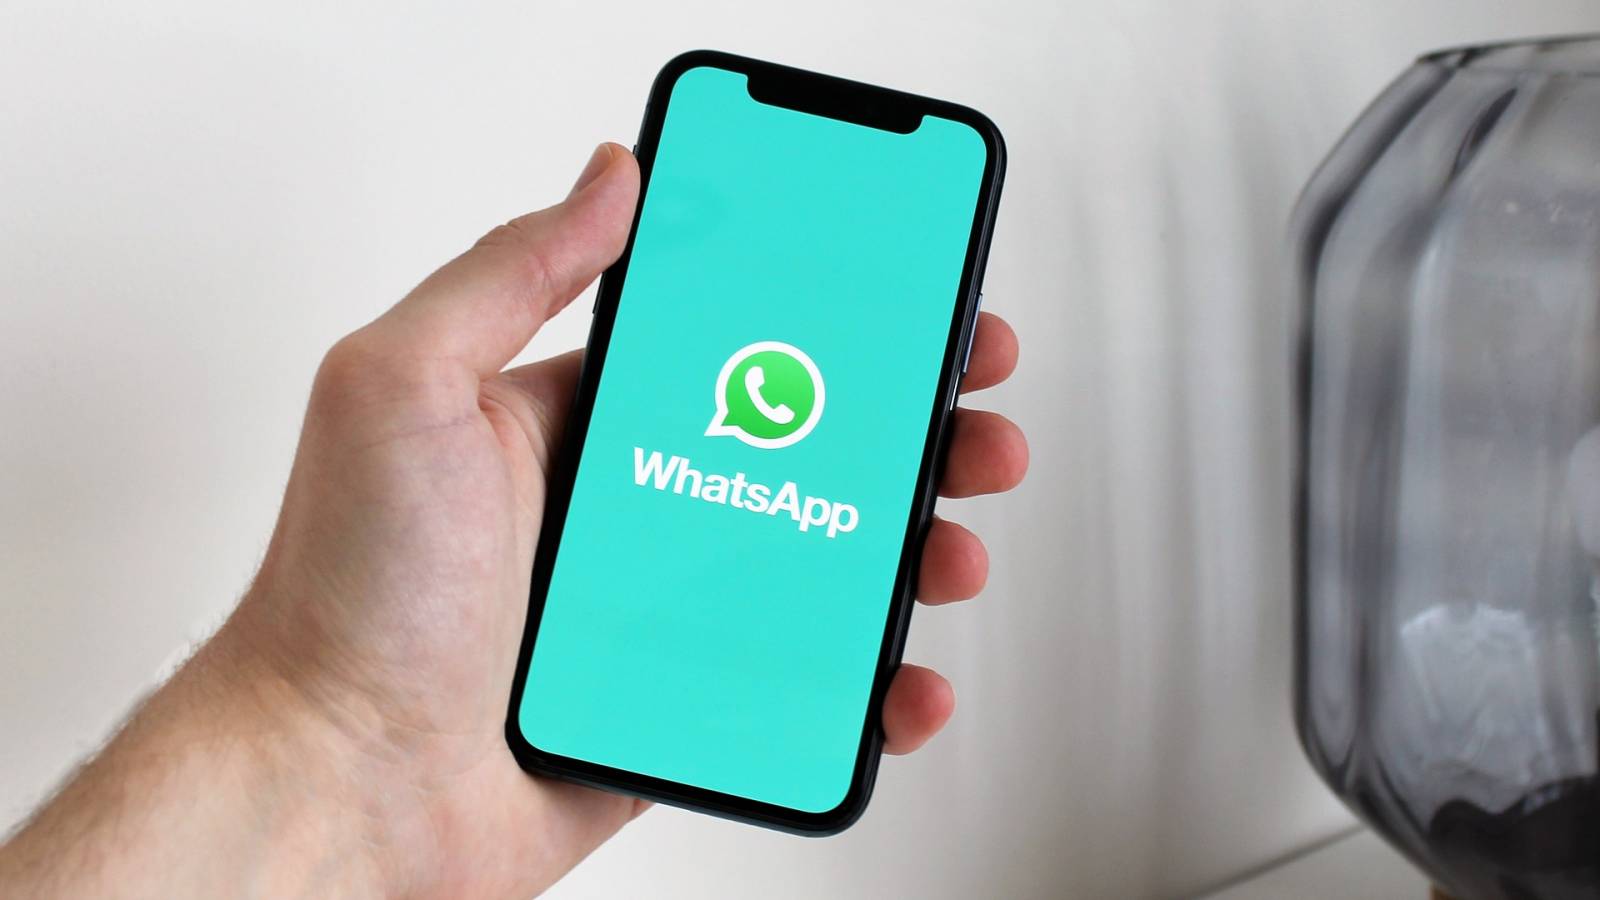 WhatsApp virallinen ilmoitus näyttää sovelluksen tulevaisuuden miljardeissa ihmisissä